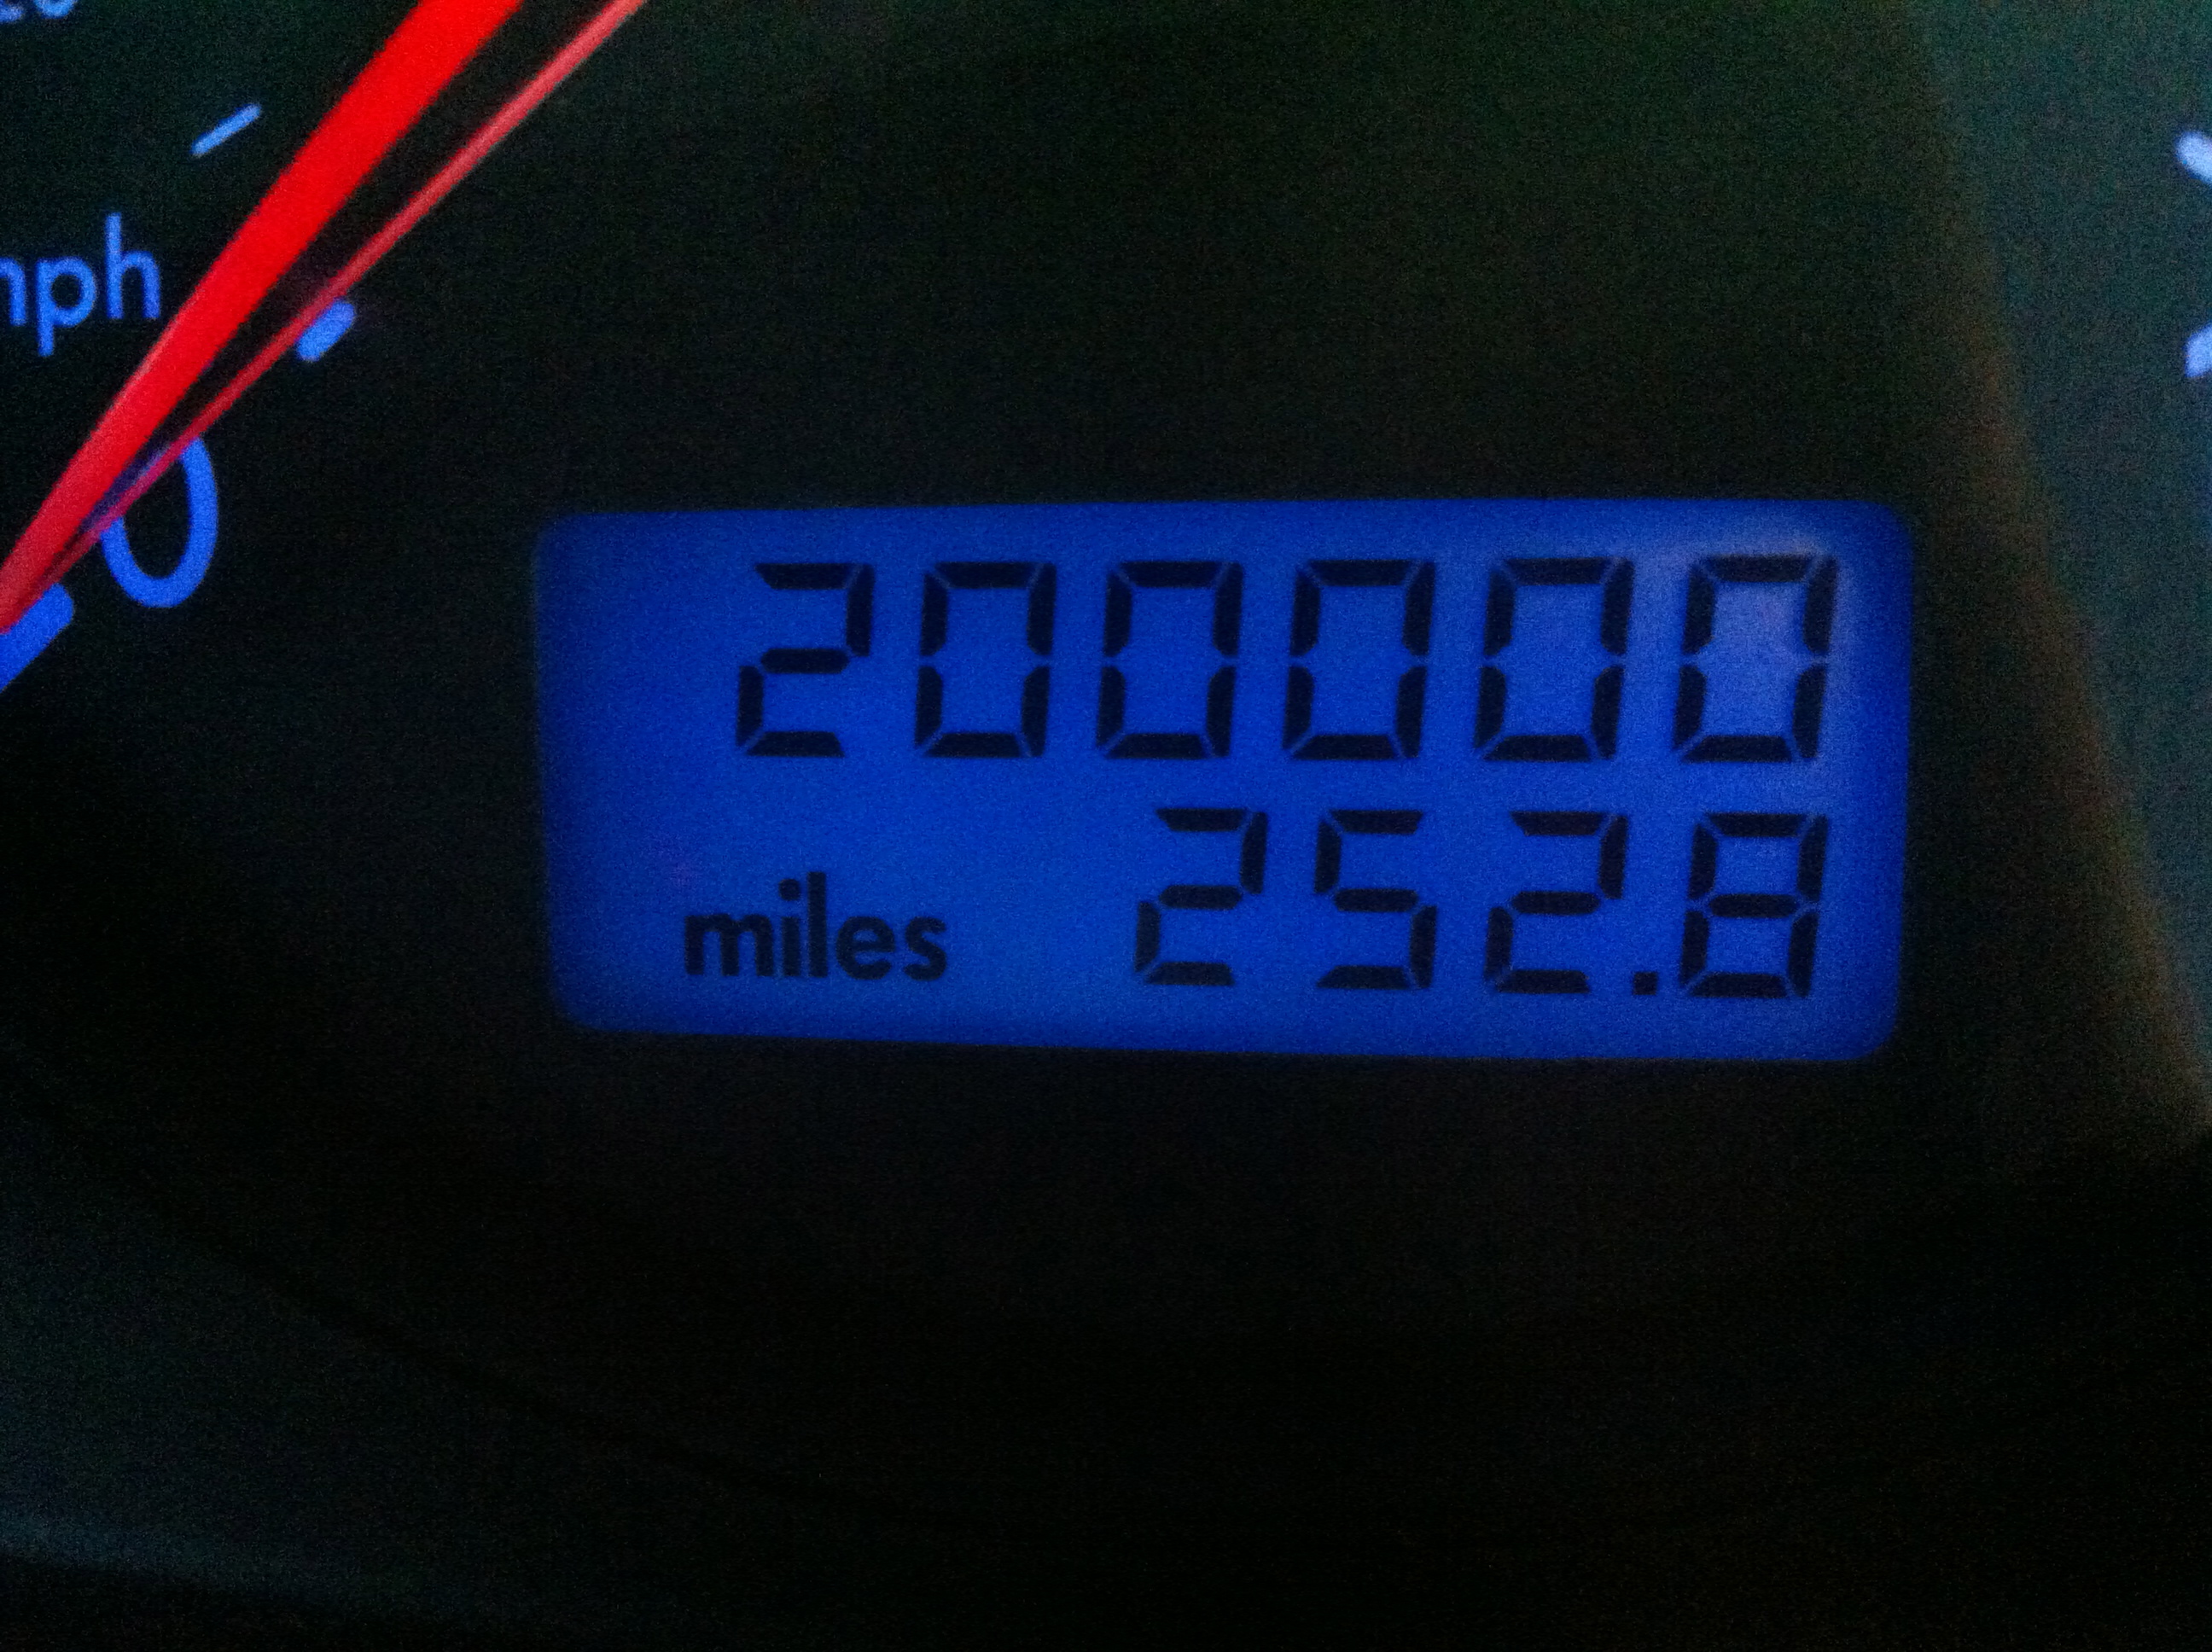 200000 miles on odometer